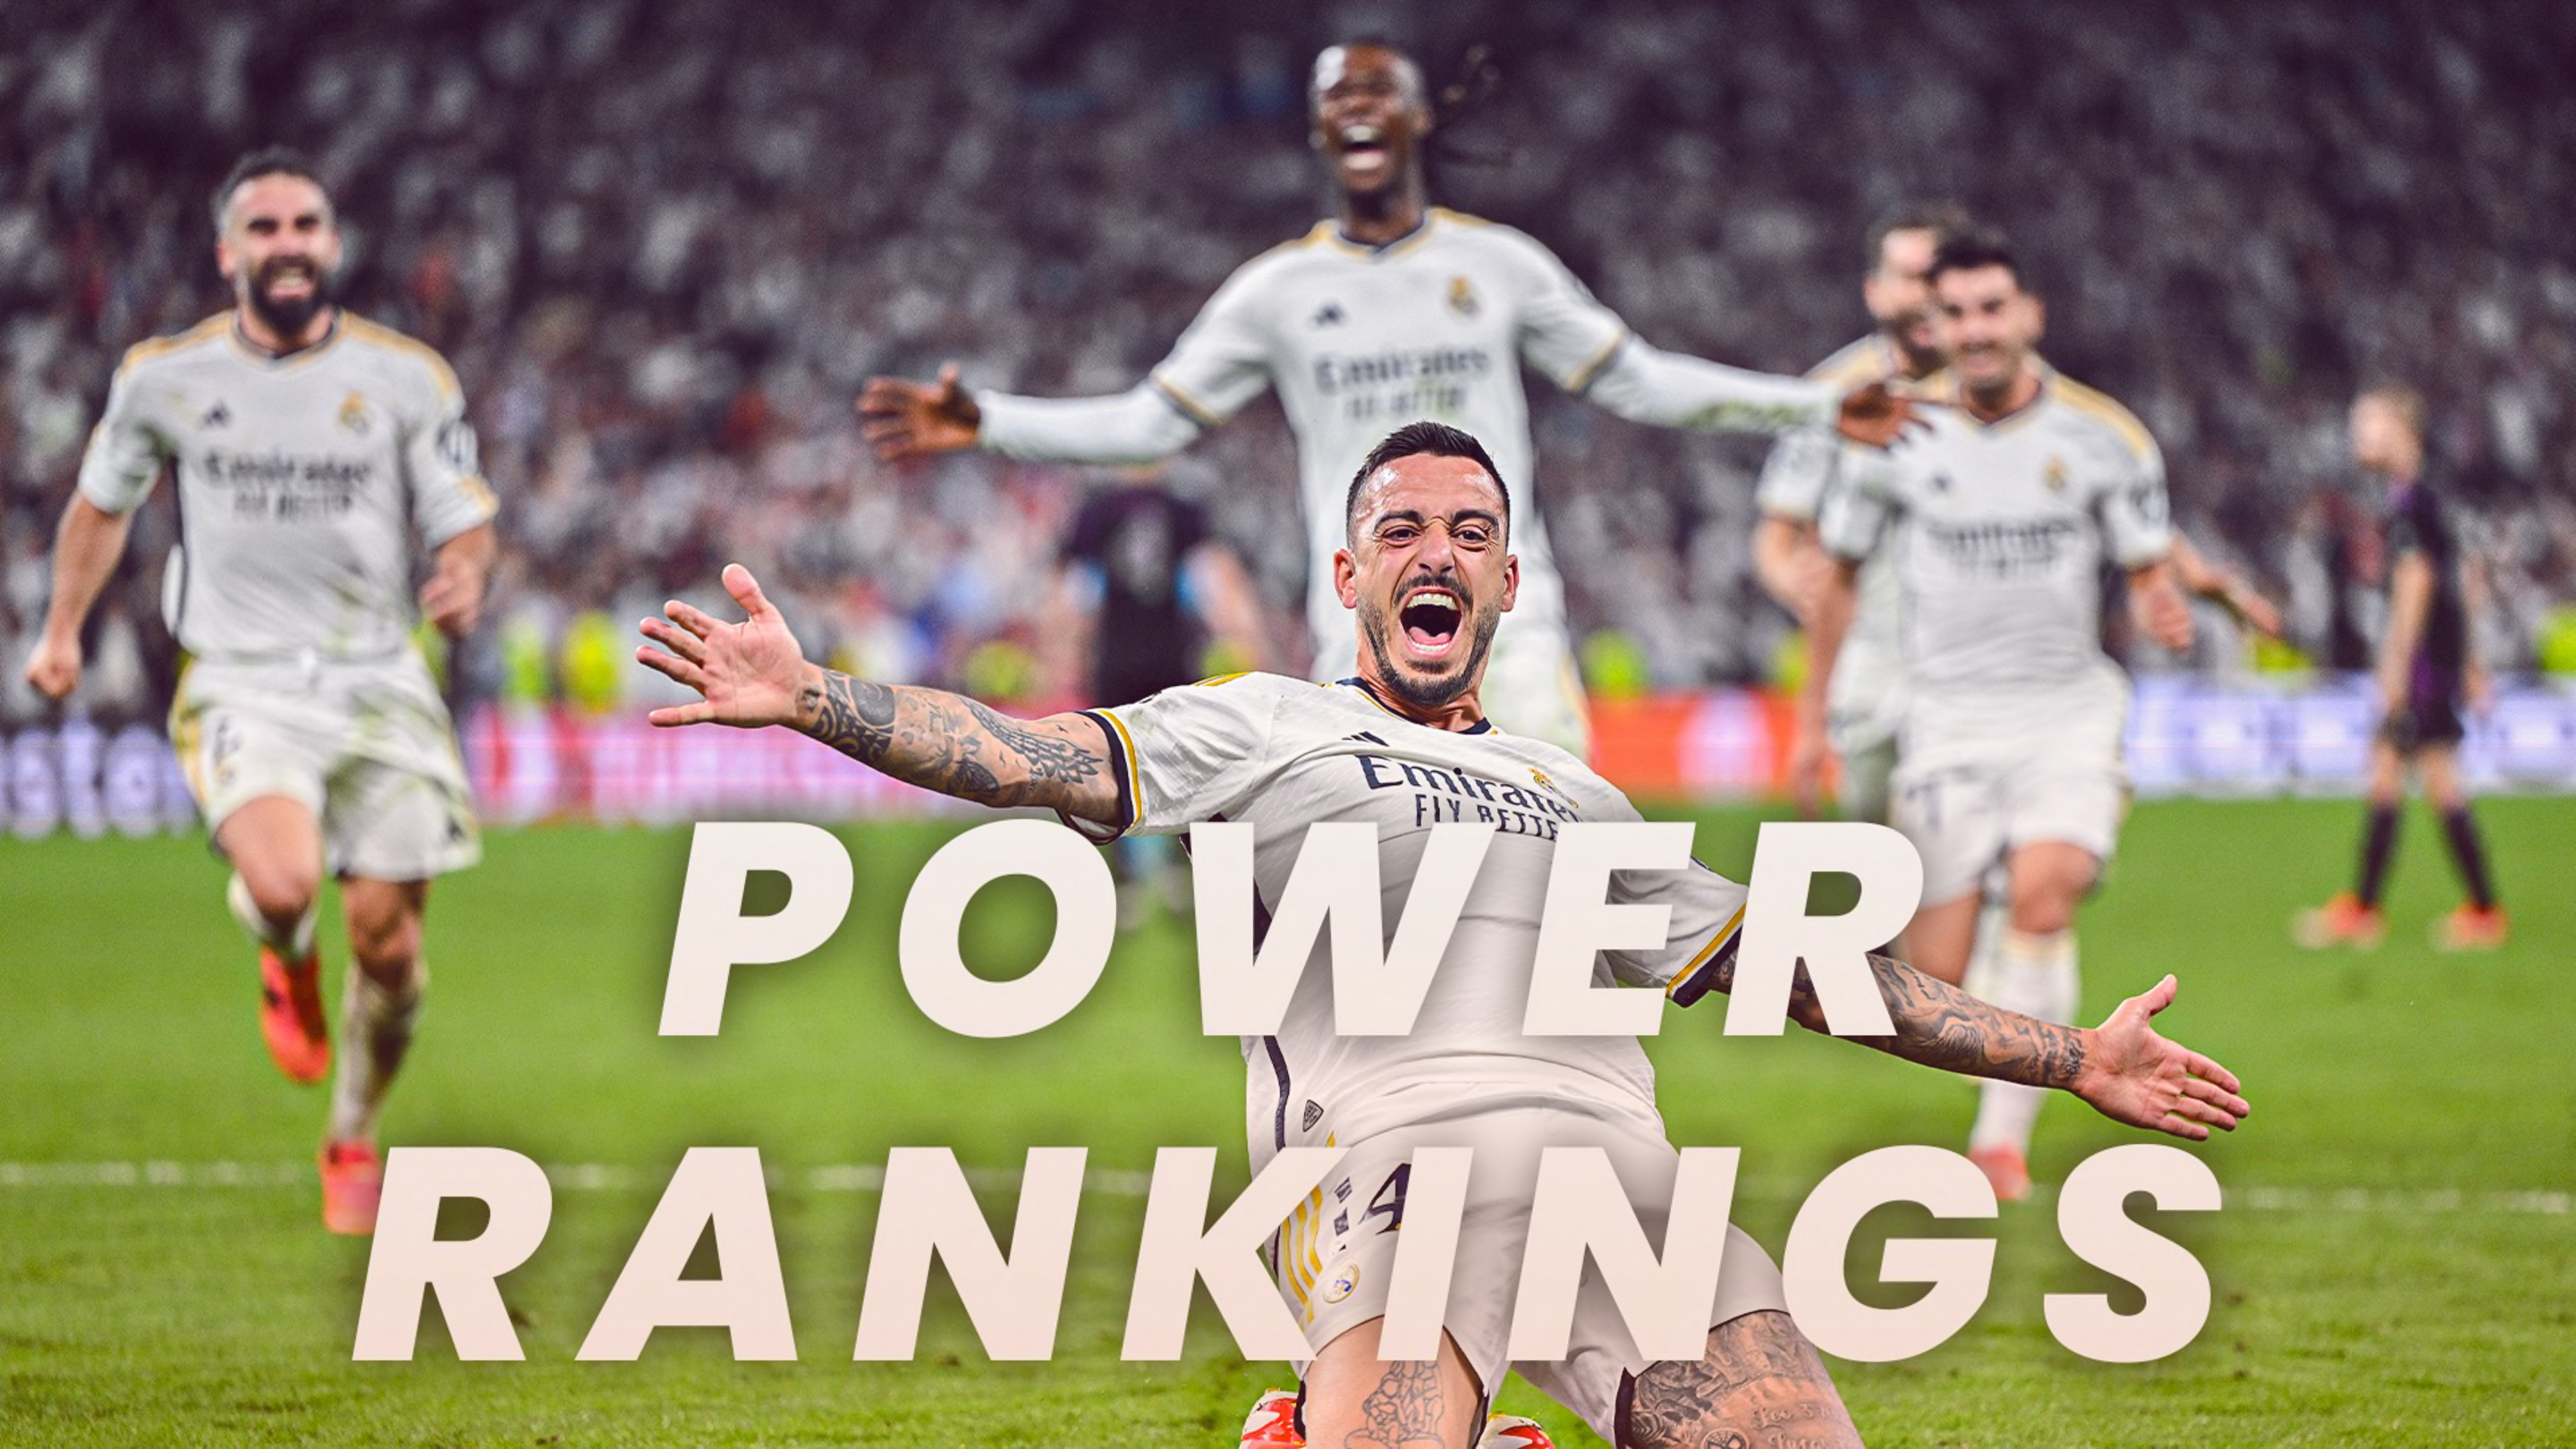 Power Rankings: The best teams in Europe - Week 28